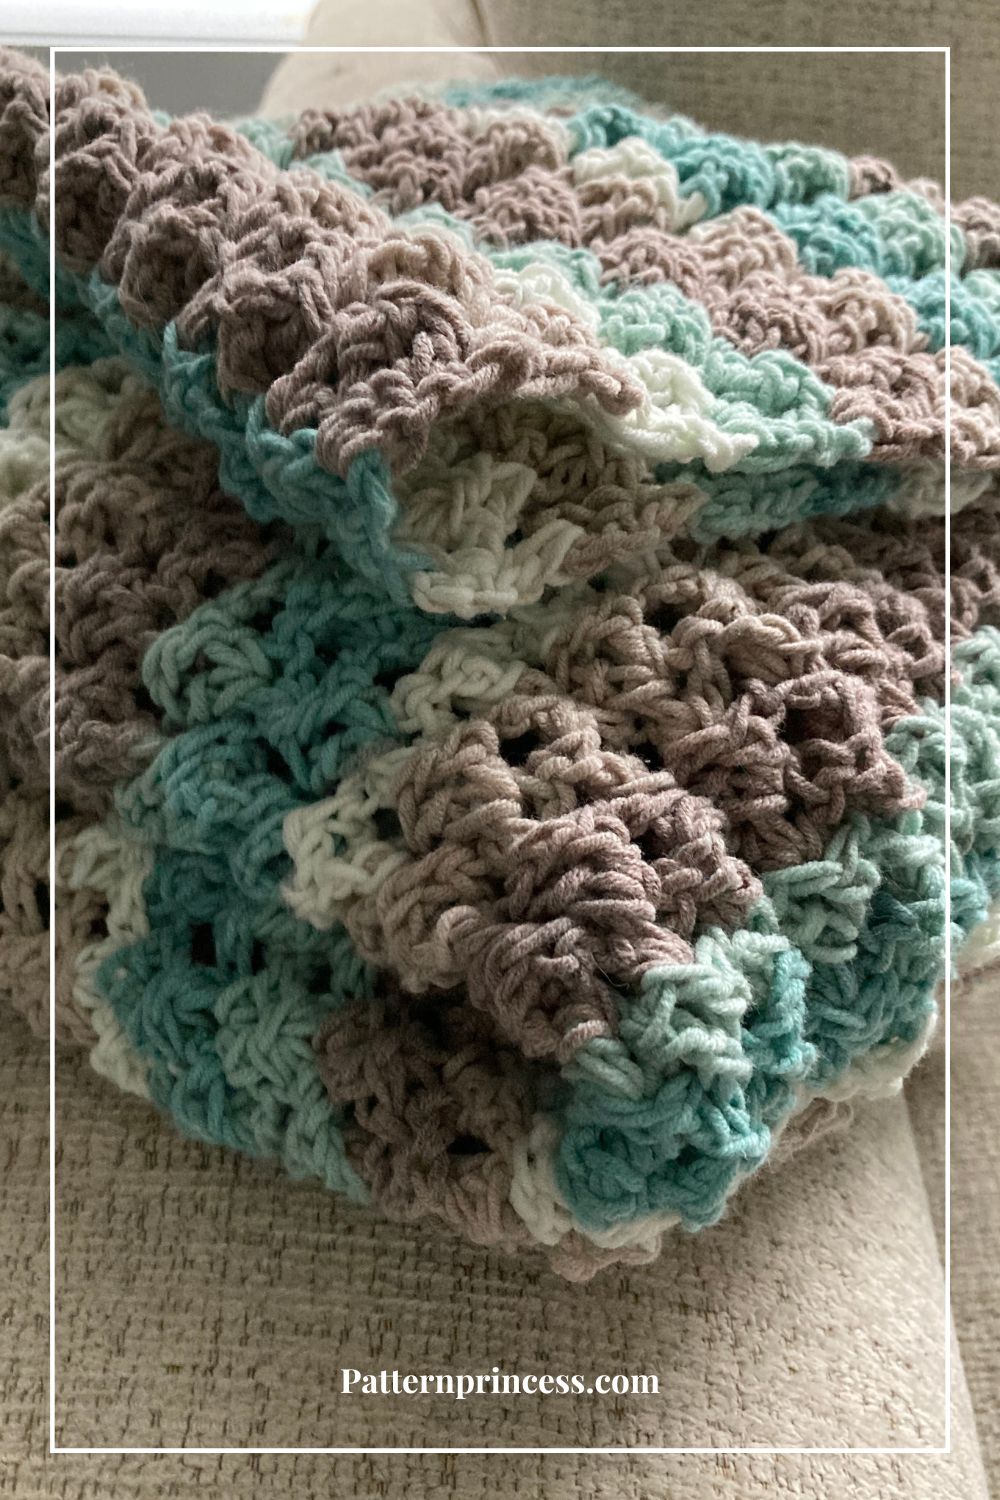 Bulky crochet throw folded